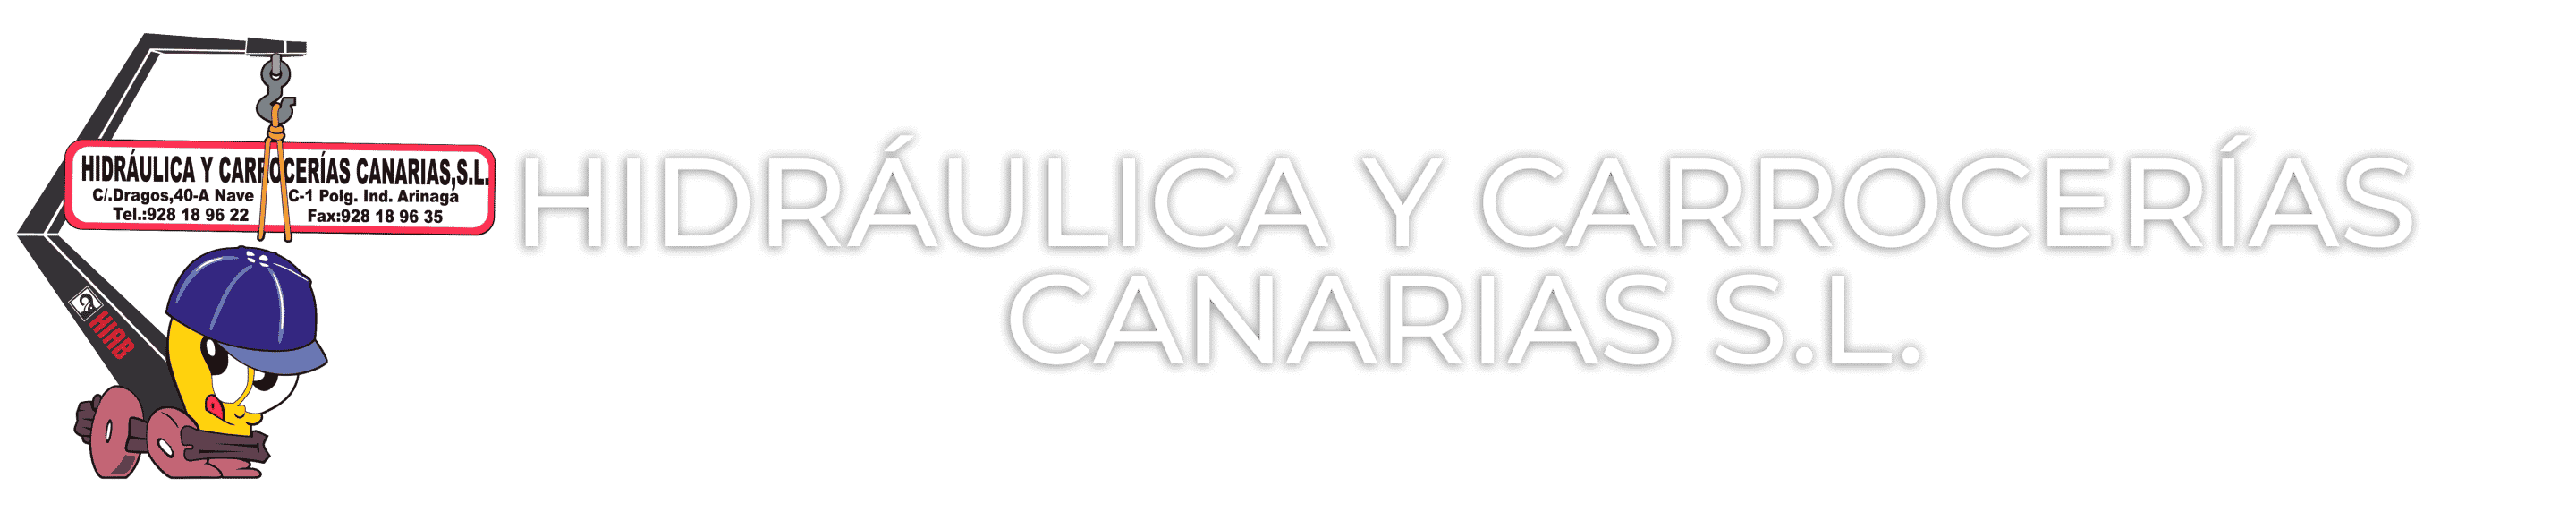 Hidraulica y Carrocerias Canarias